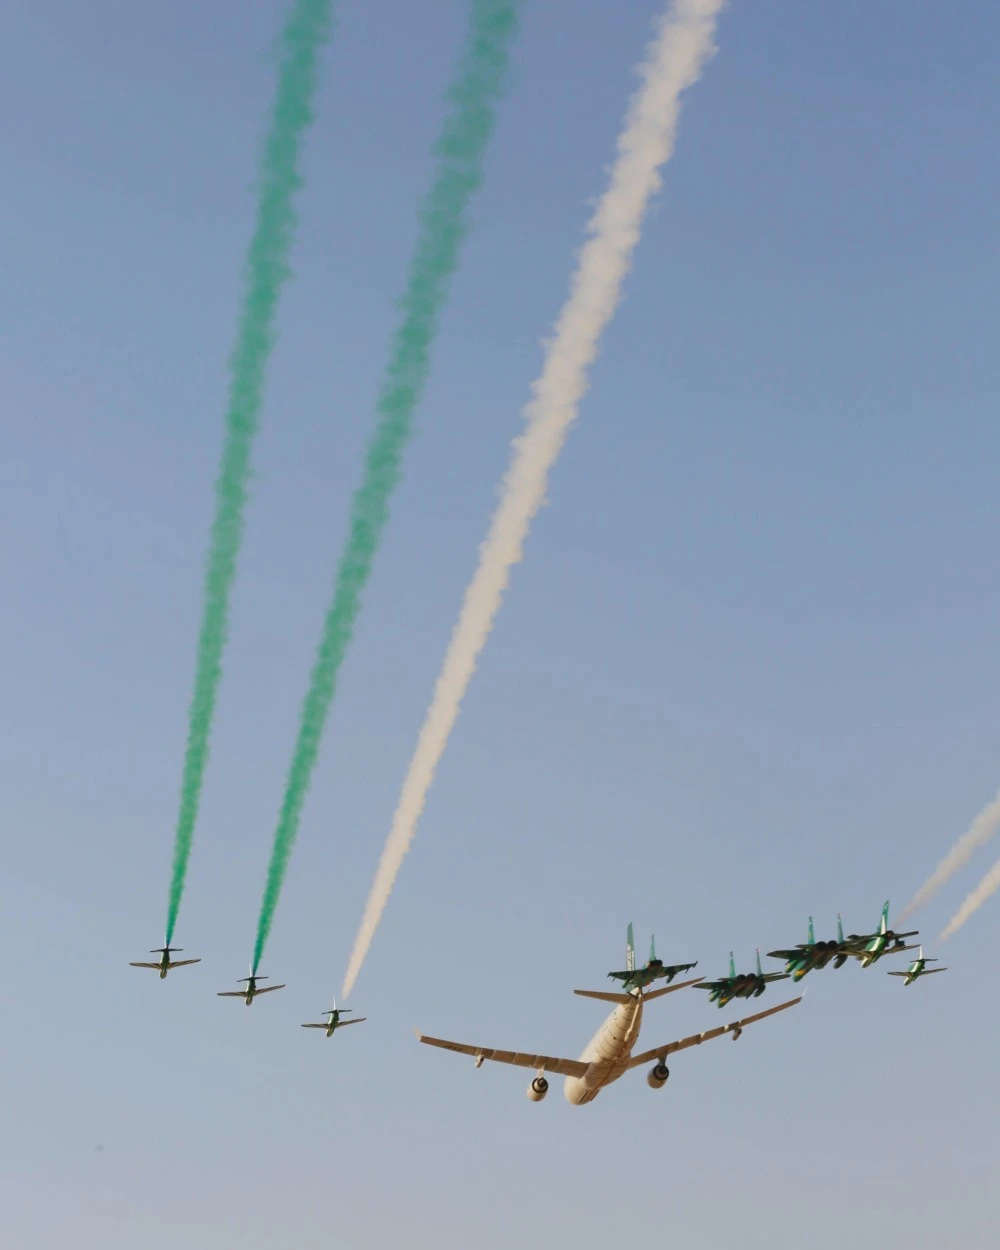  عرض القوات الجوية بمناسبة اليوم الوطني السعودي 93